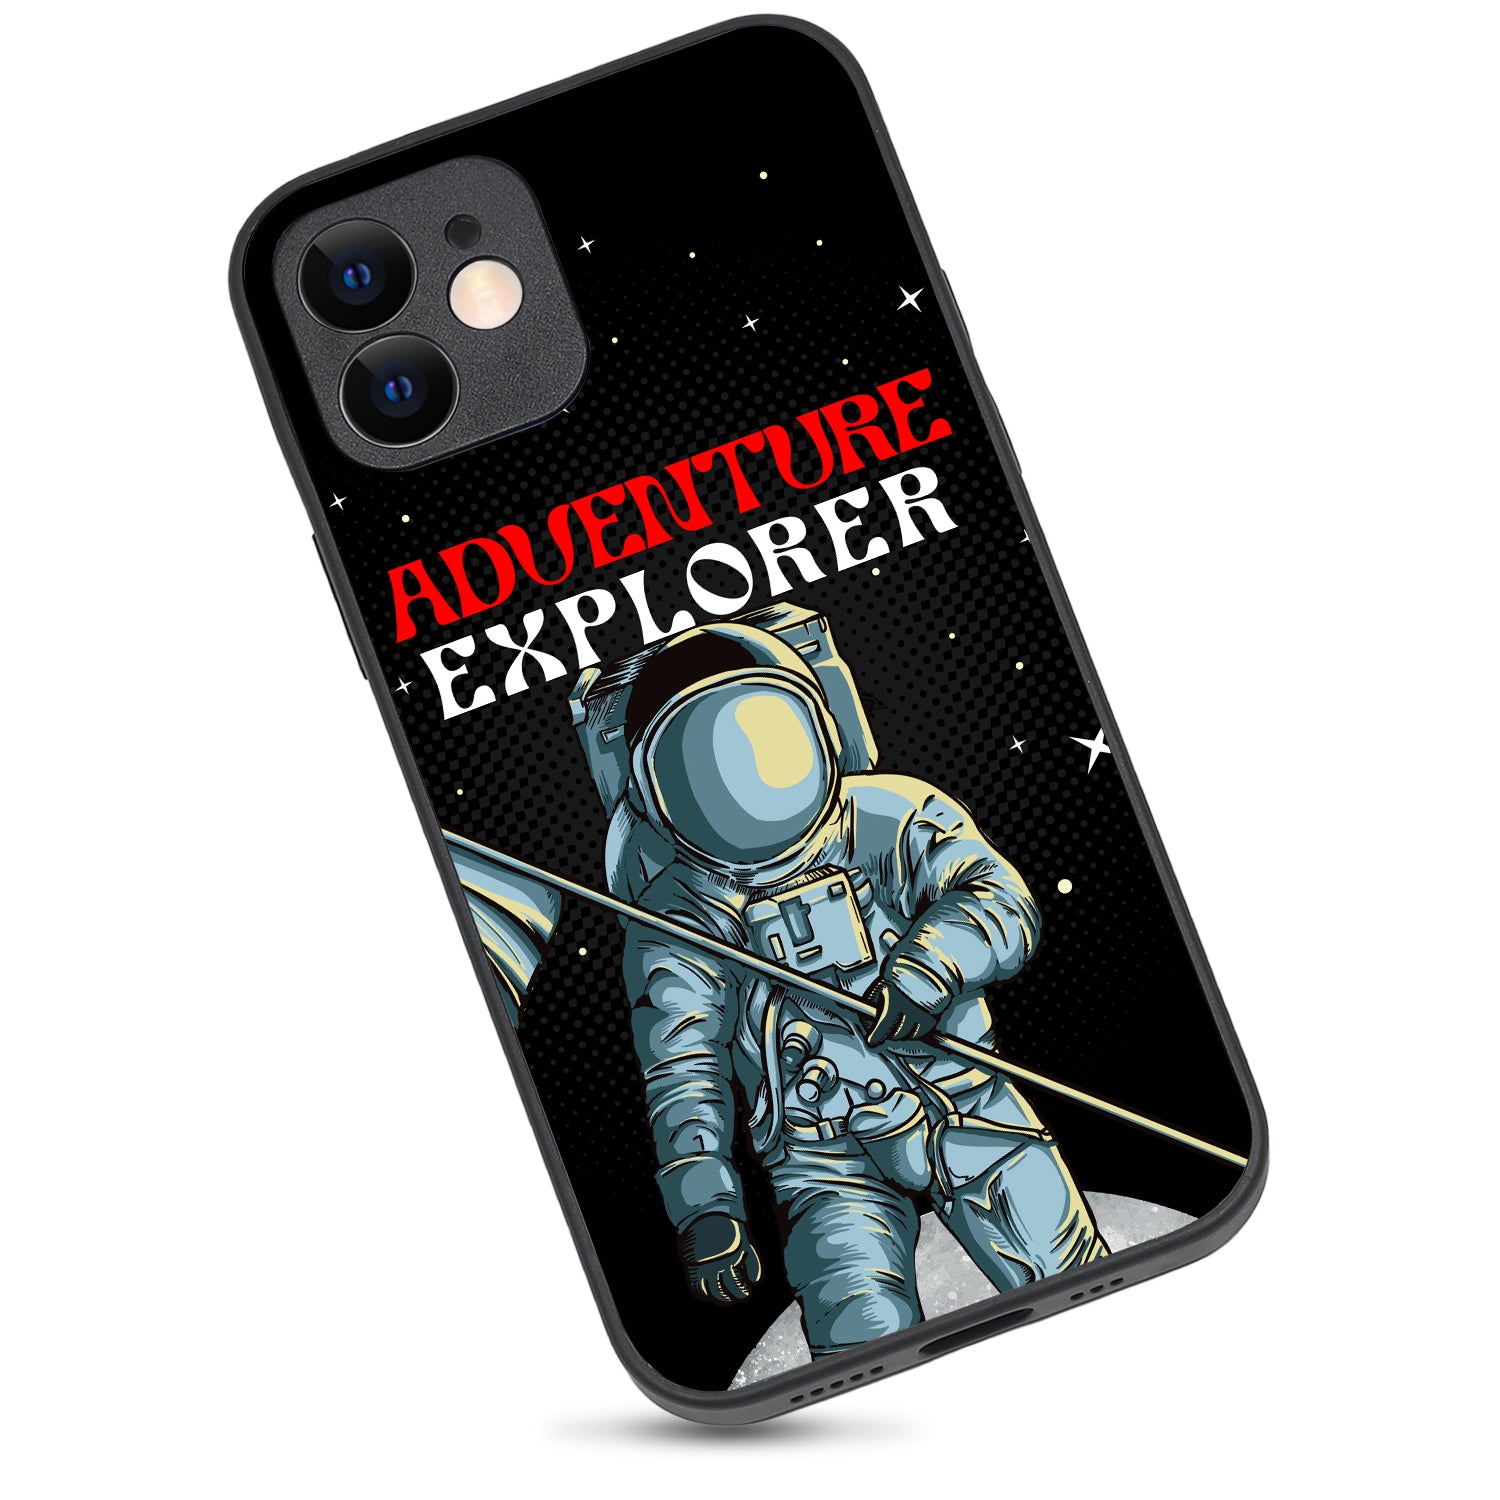 Adventure Explorer Space iPhone 12 Case